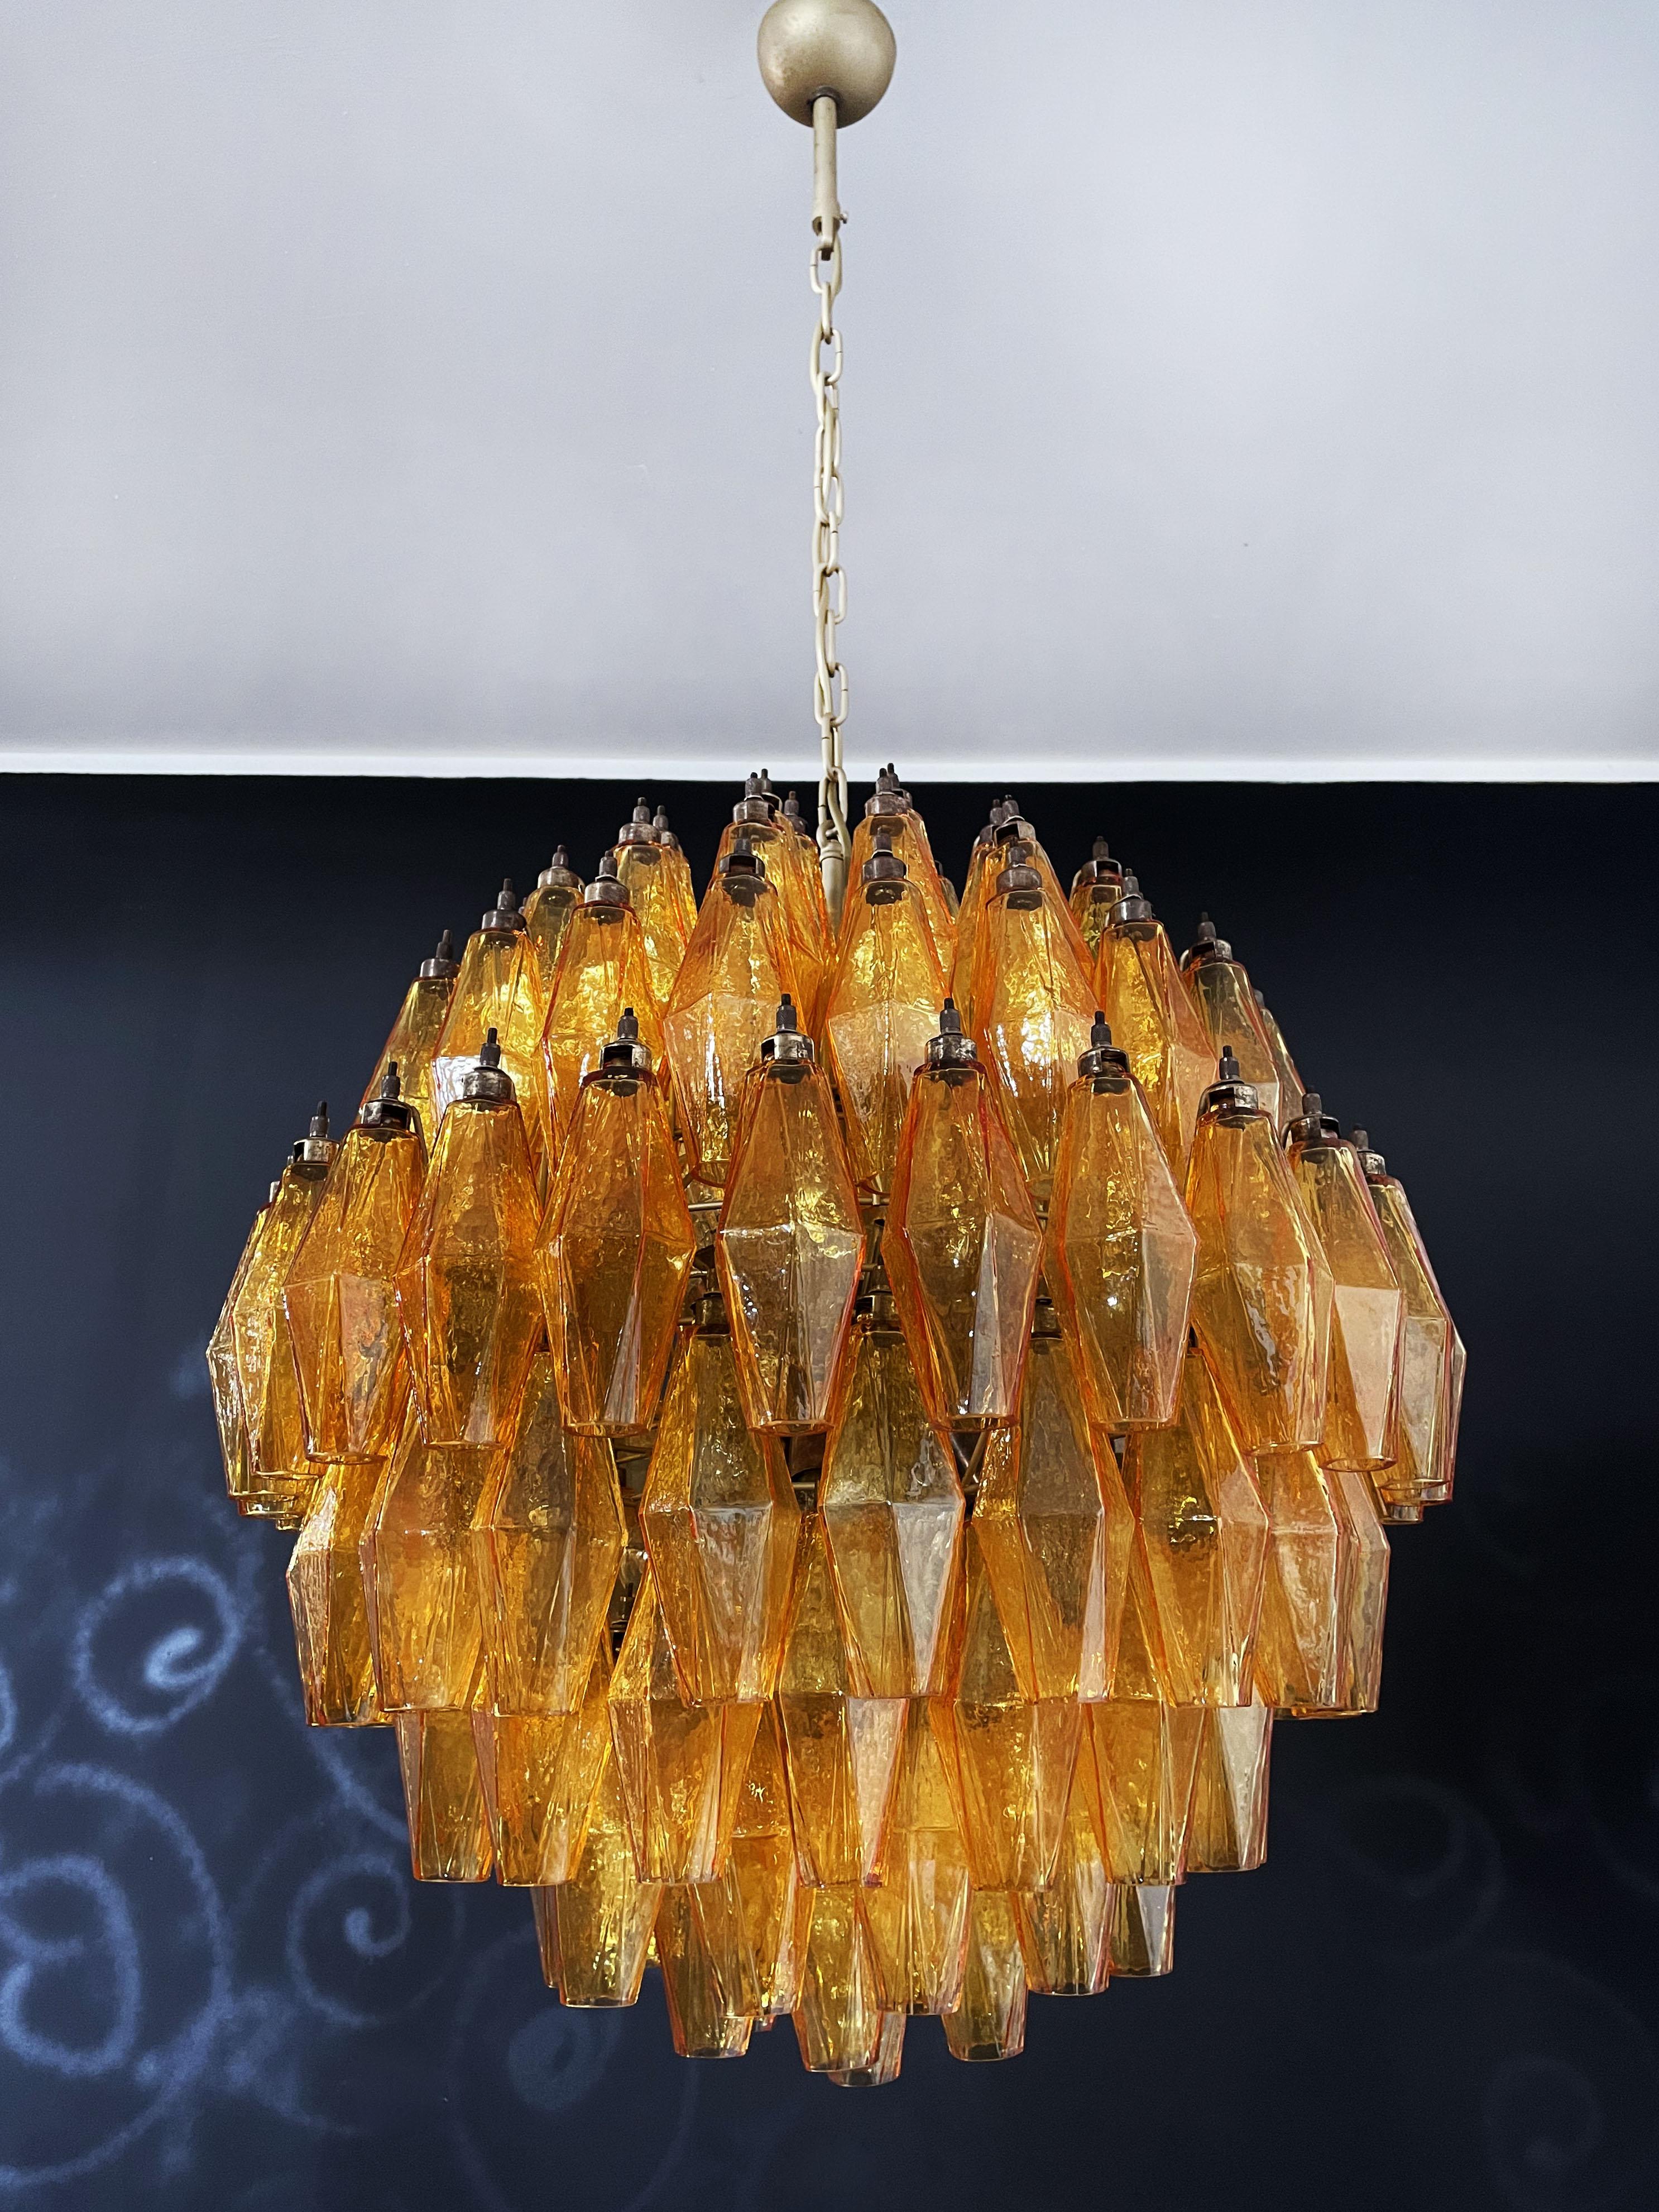 Amazing Spherical Murano Poliedri Candelier - 140 Amber Poliedri In Good Condition For Sale In Gaiarine Frazione Francenigo (TV), IT